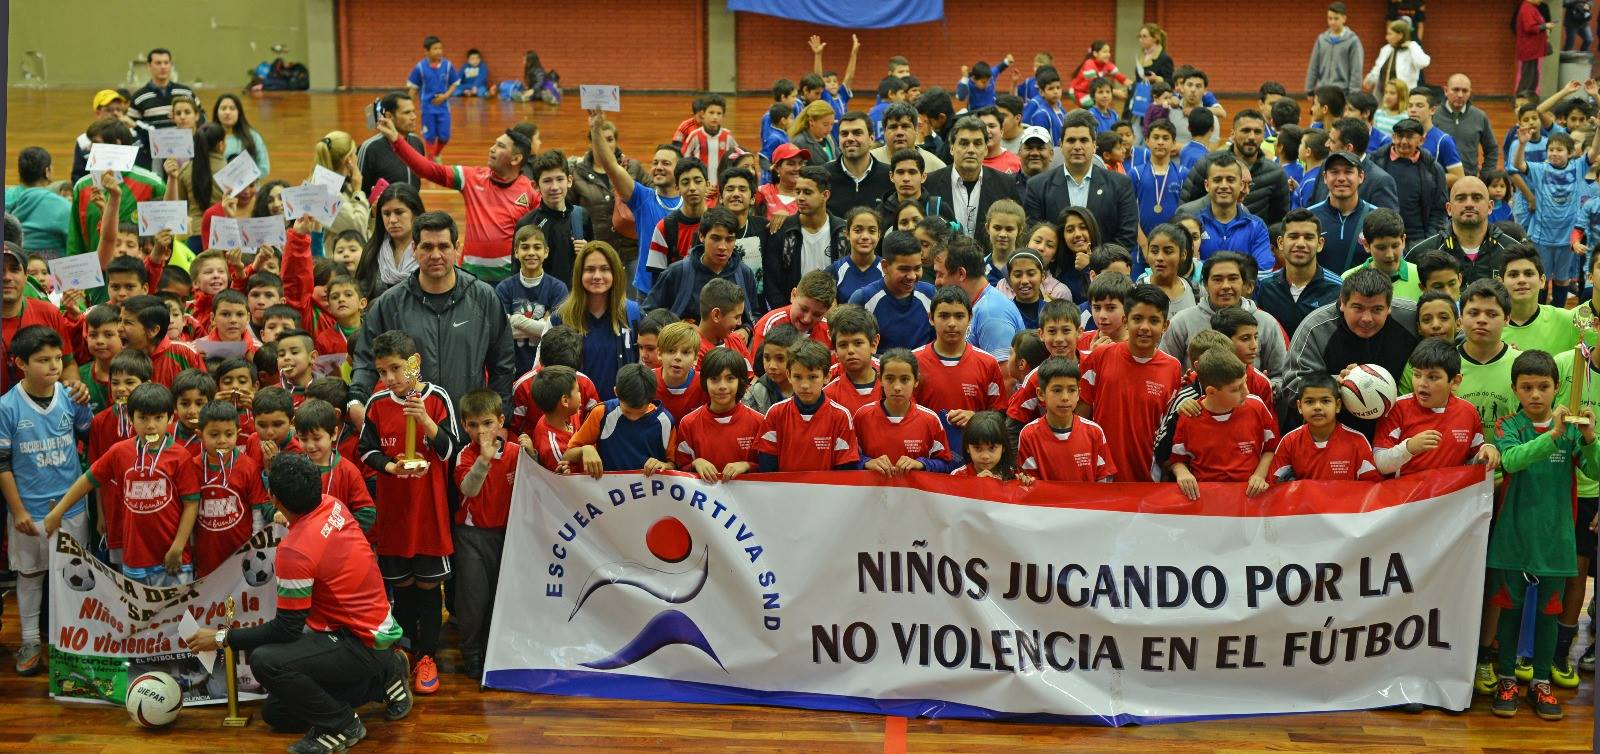 Culminó con éxito el Torneo “Niños jugando por la no violencia en el fútbol”